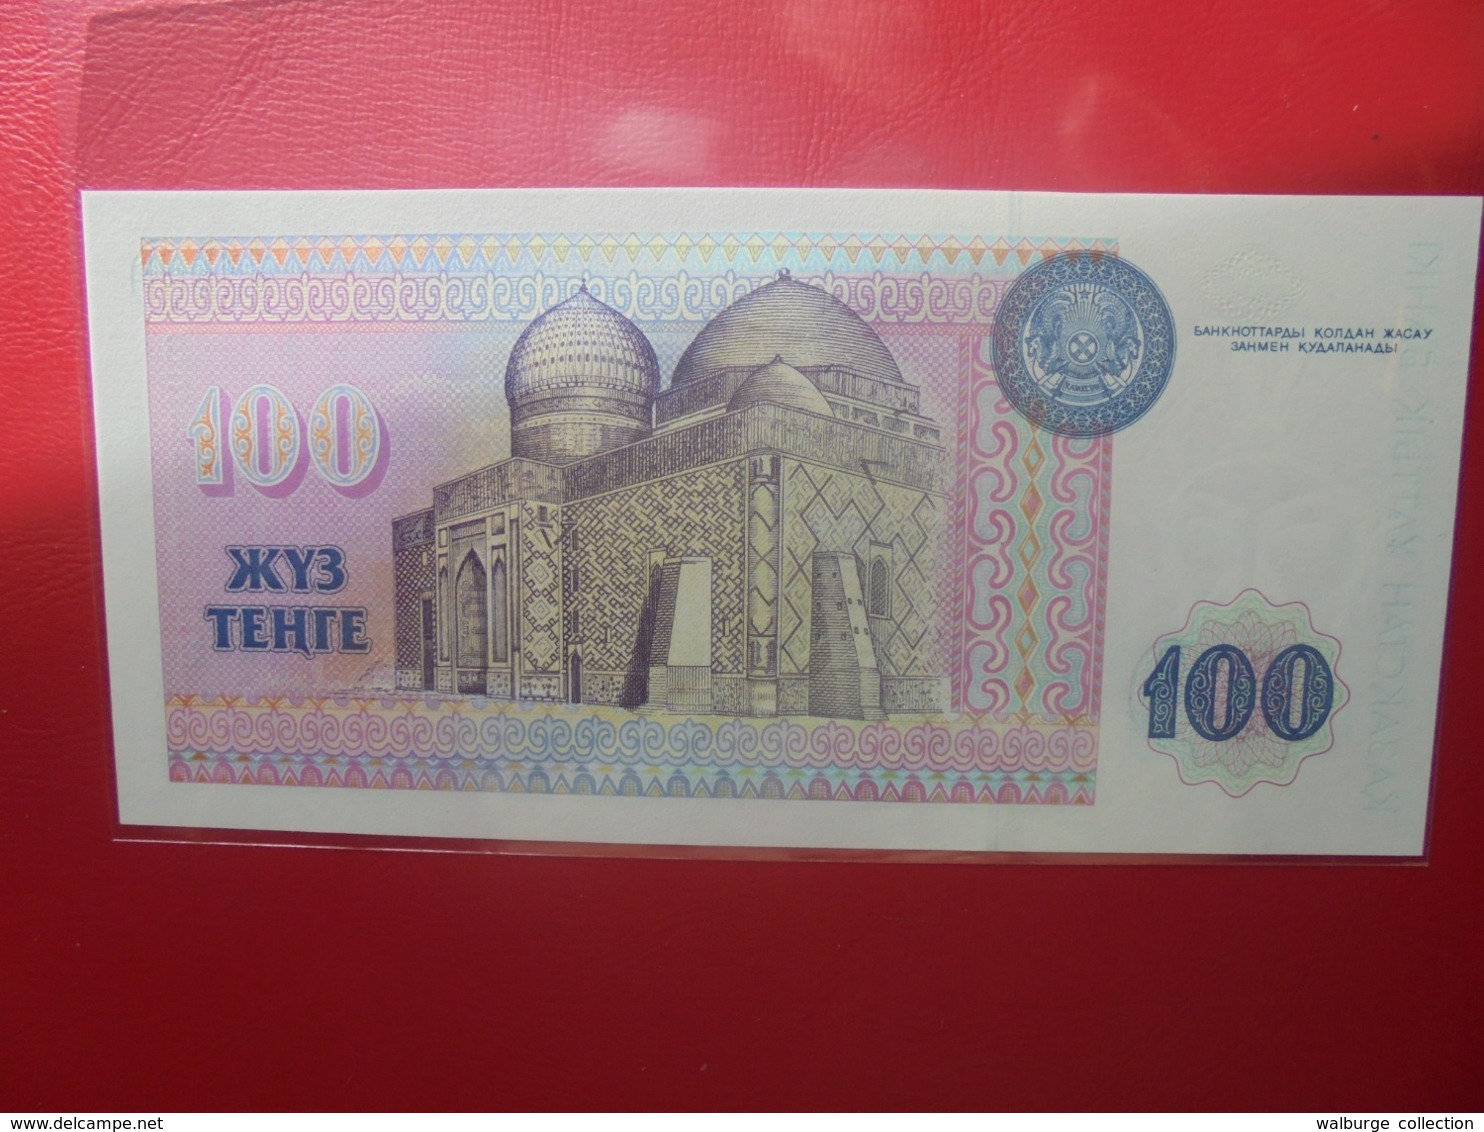 KAZAKHSTAN 100 TENGE 1993 PEU CIRCULER/NEUF - Kazakhstan